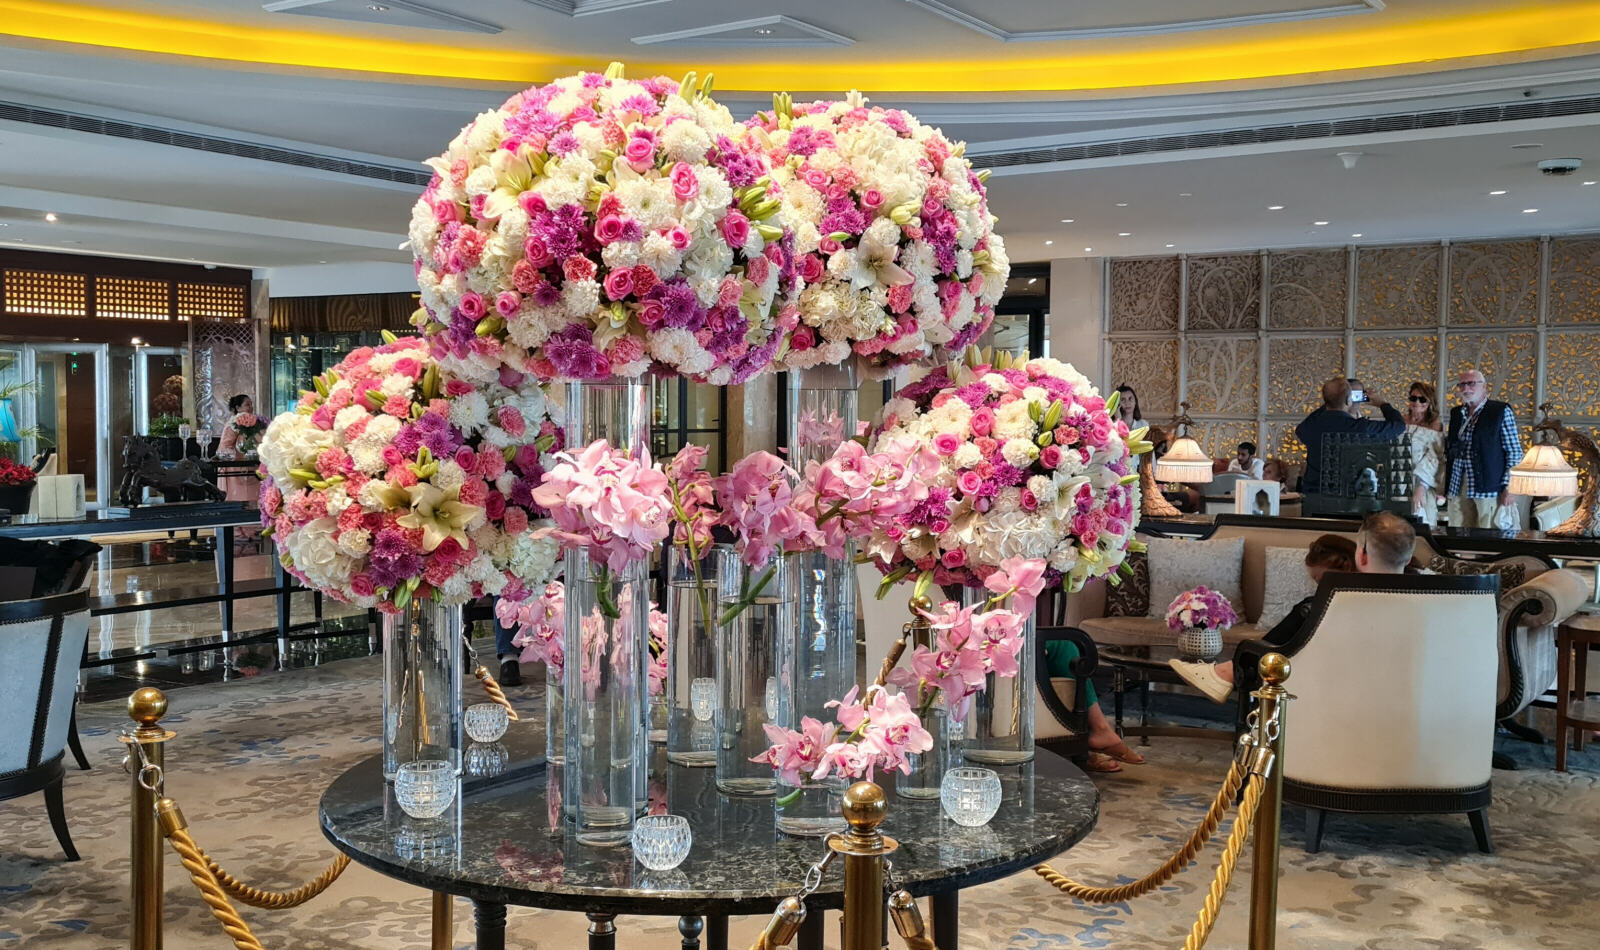 Flower bouquet in the foyer of the Taj hotel, Bombay